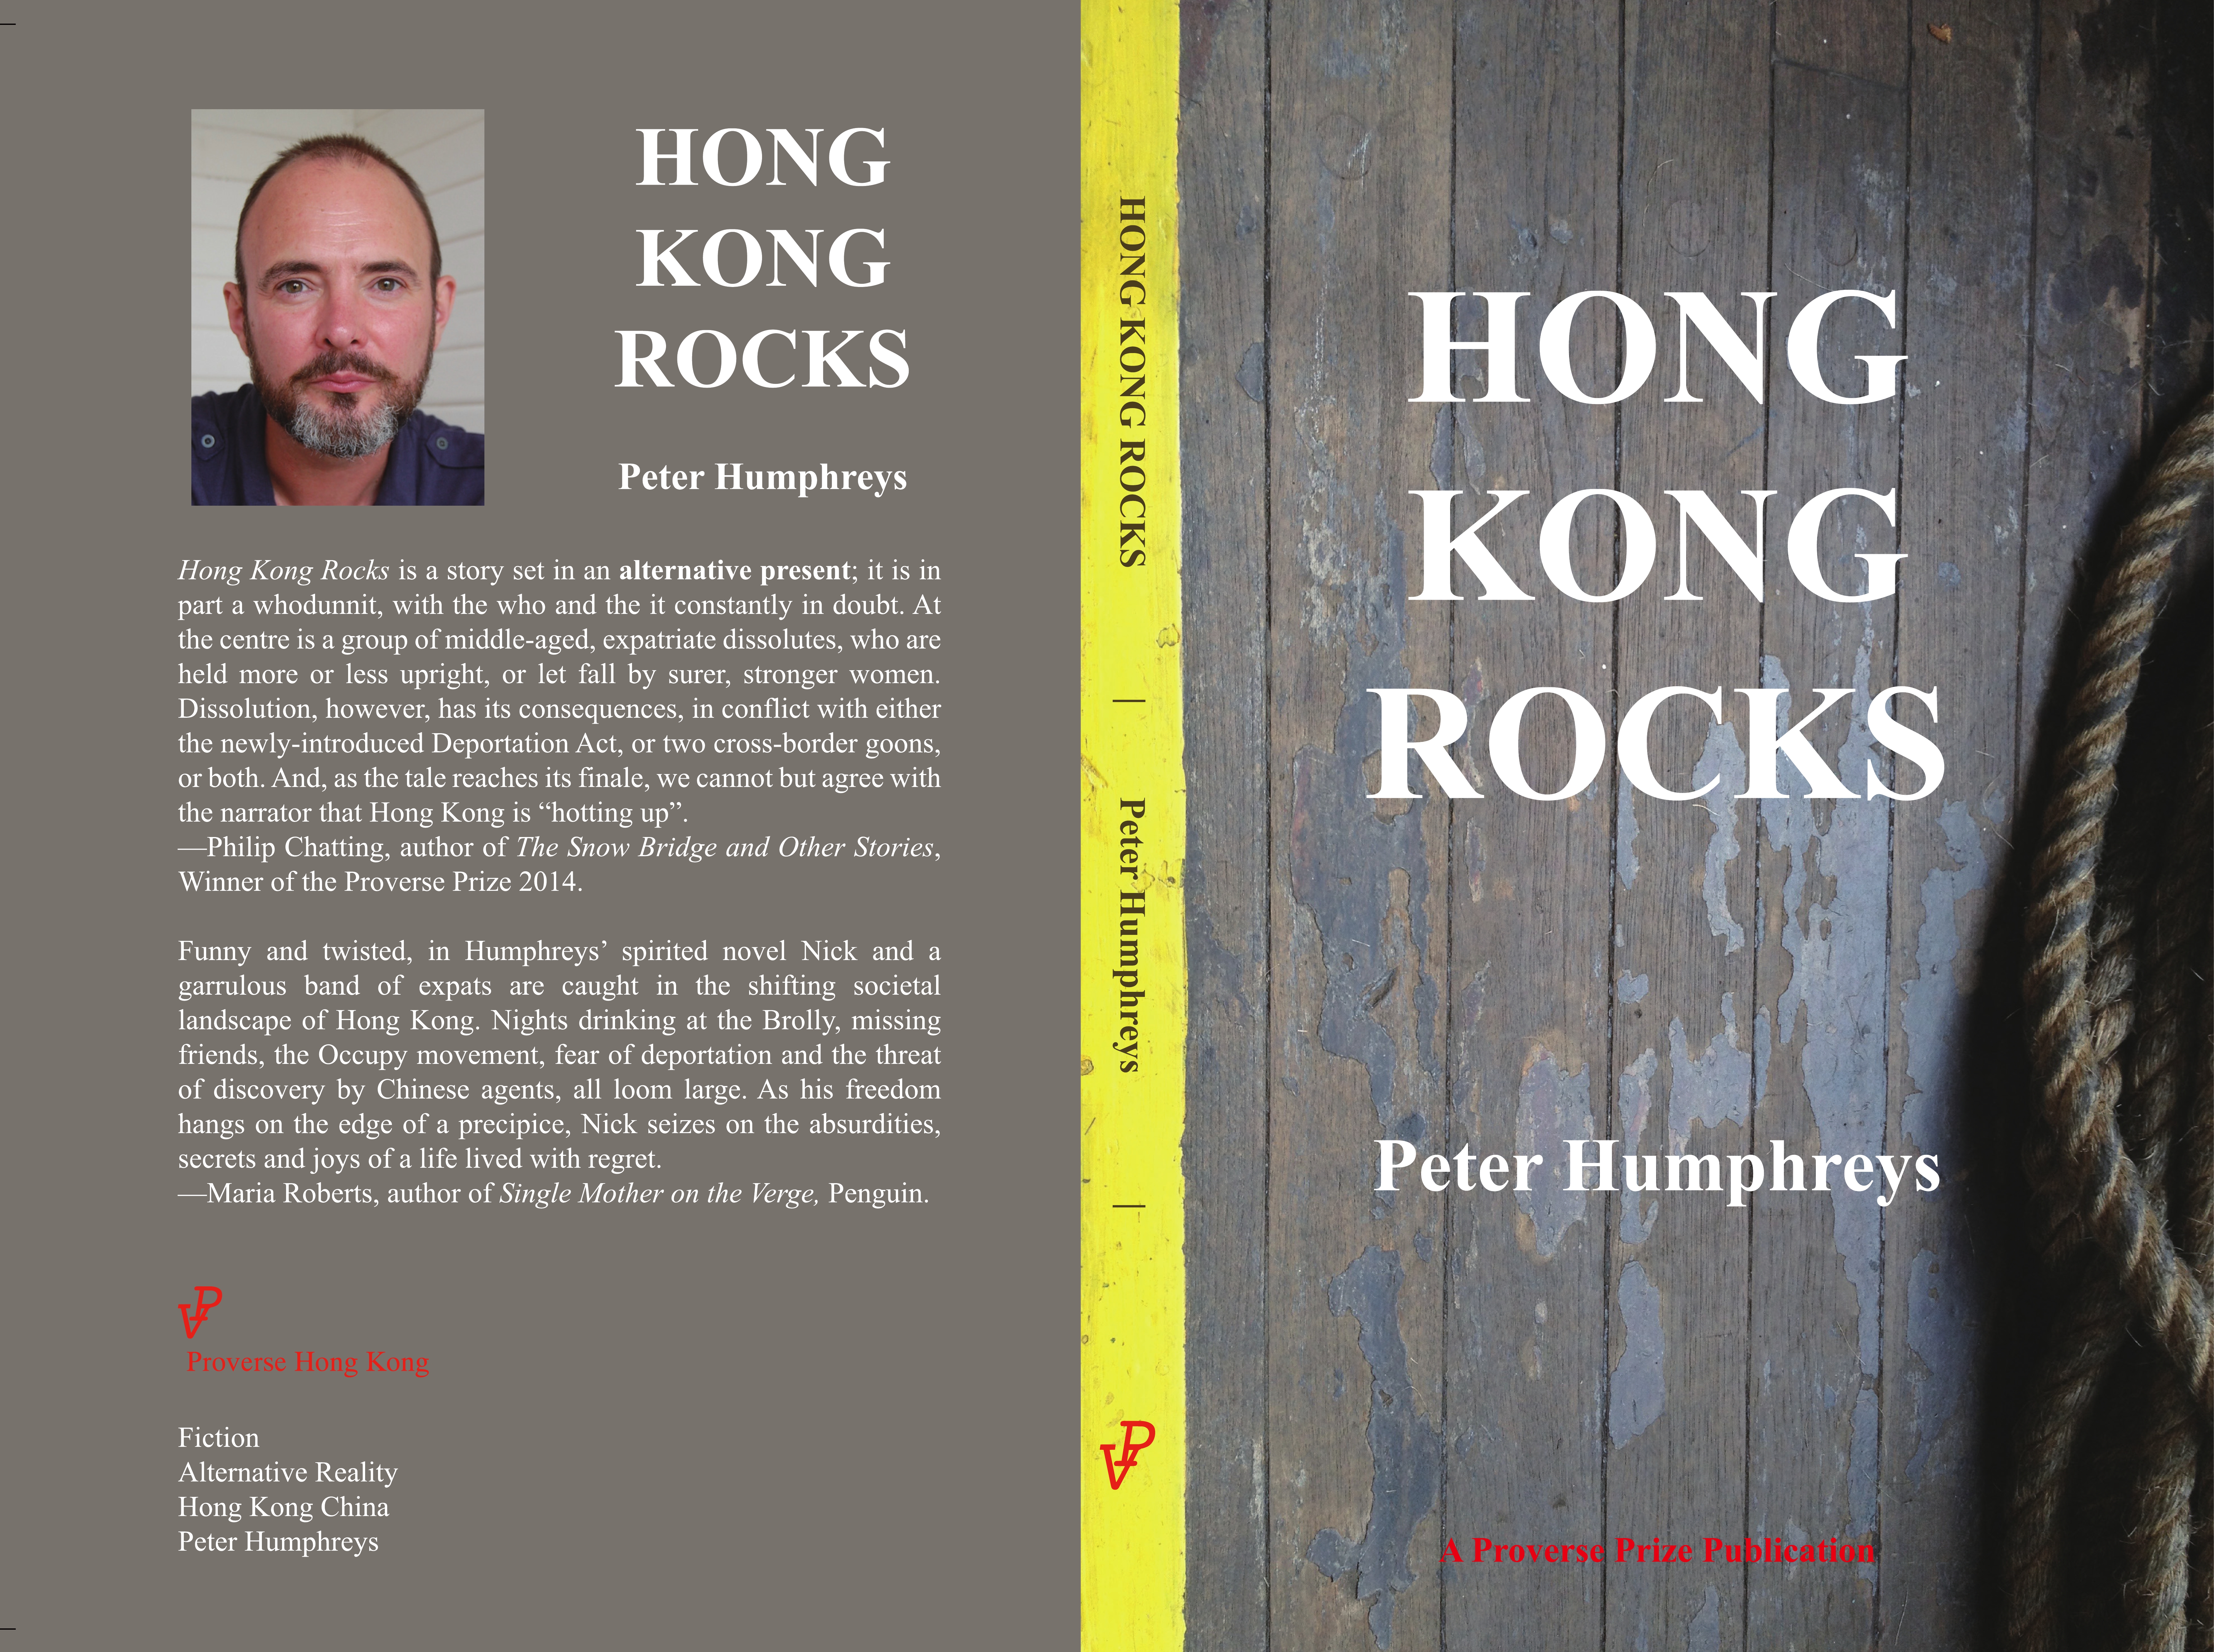 Gillian_Hong Kong Rocks cover Revised.jpg